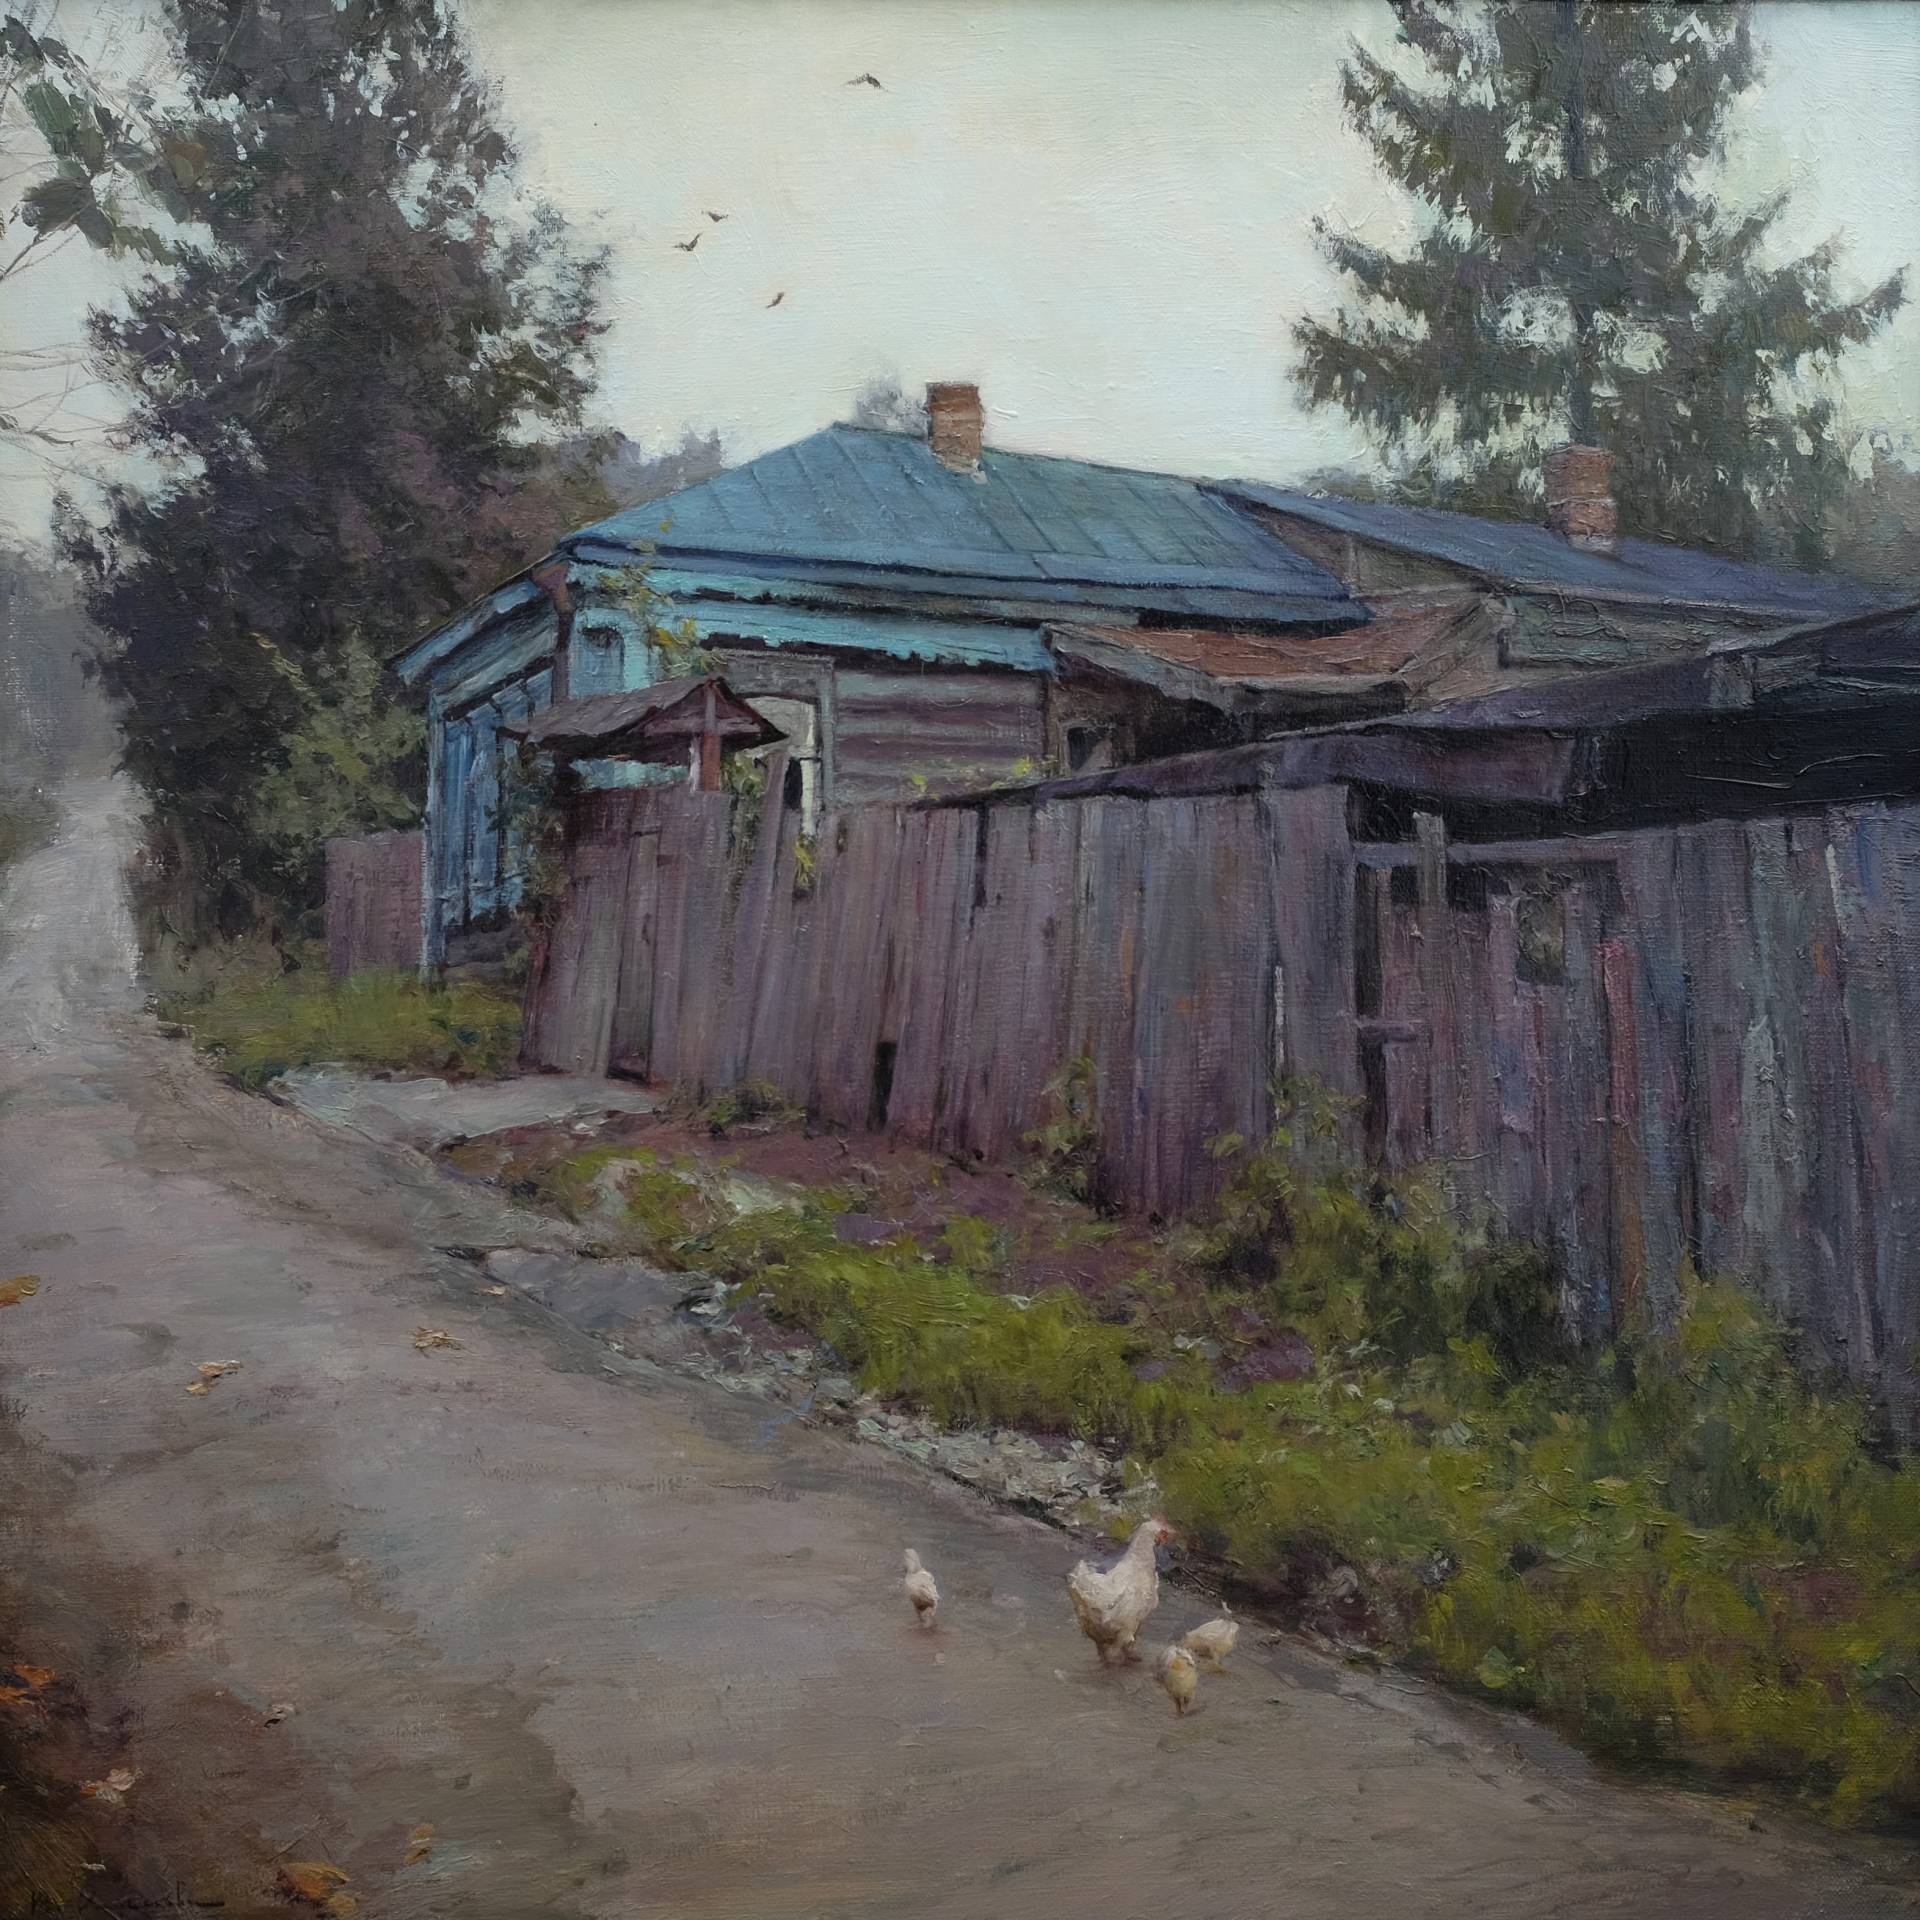 Dull - 1, Vladimir Kirillov, Buy the painting Oil